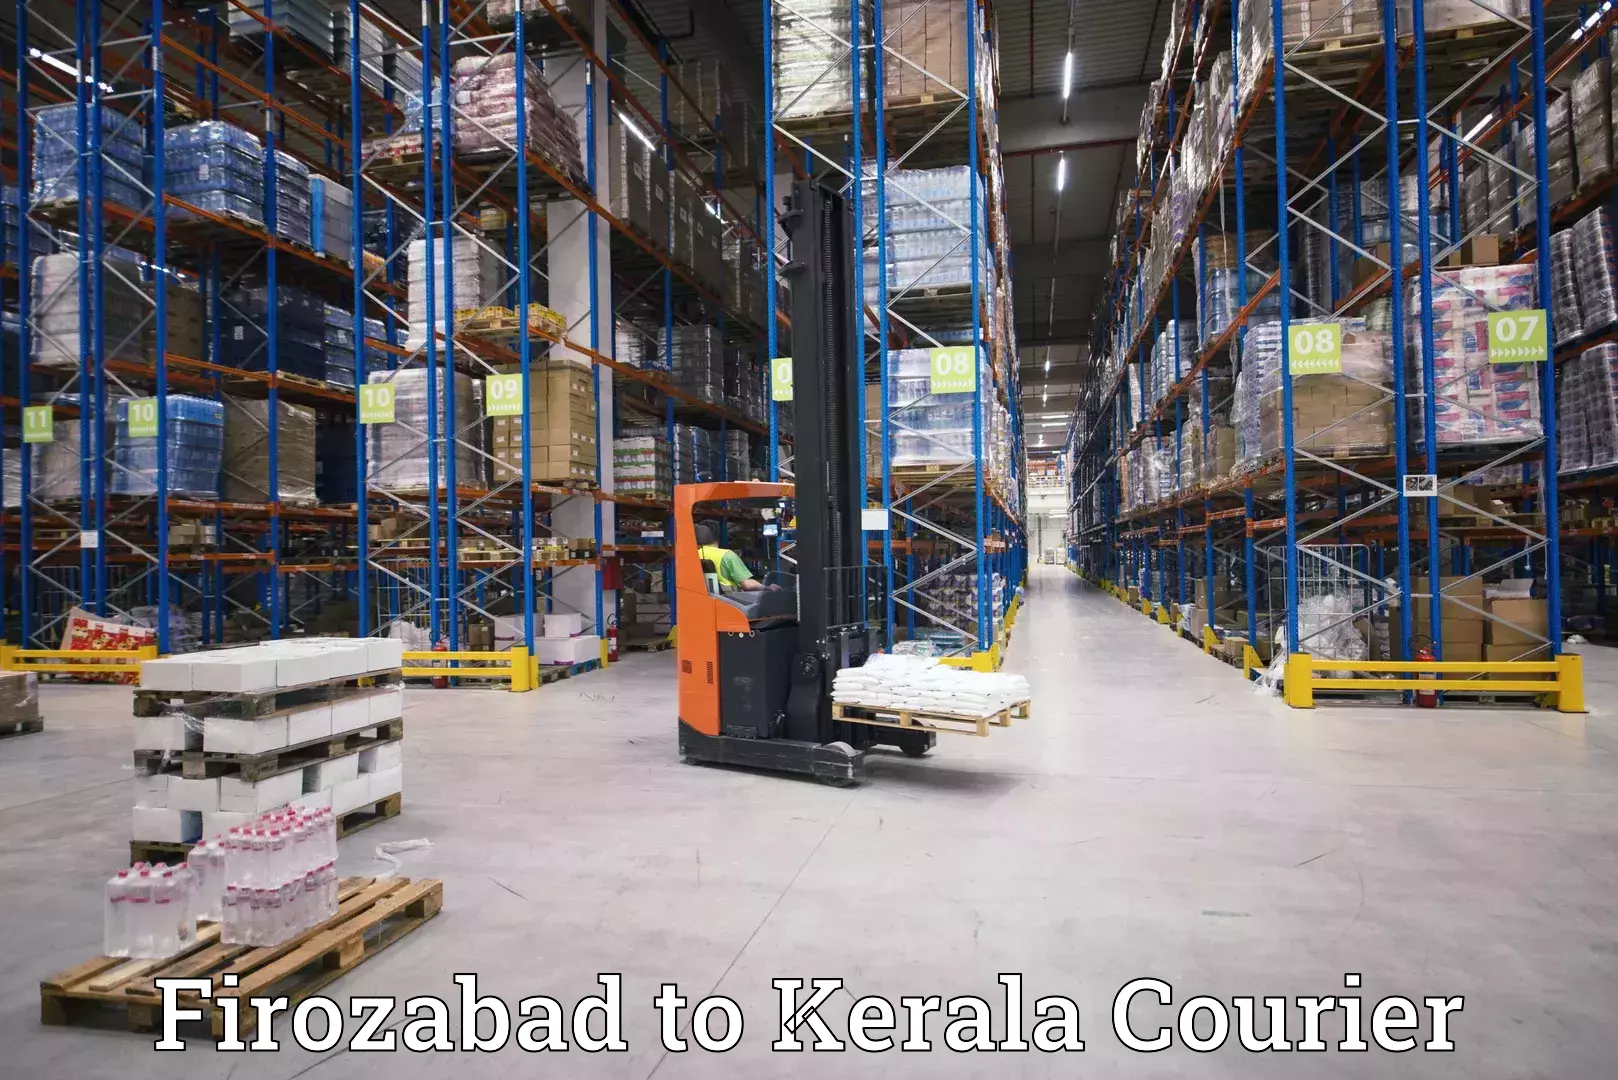 Cross-border shipping Firozabad to Guruvayur